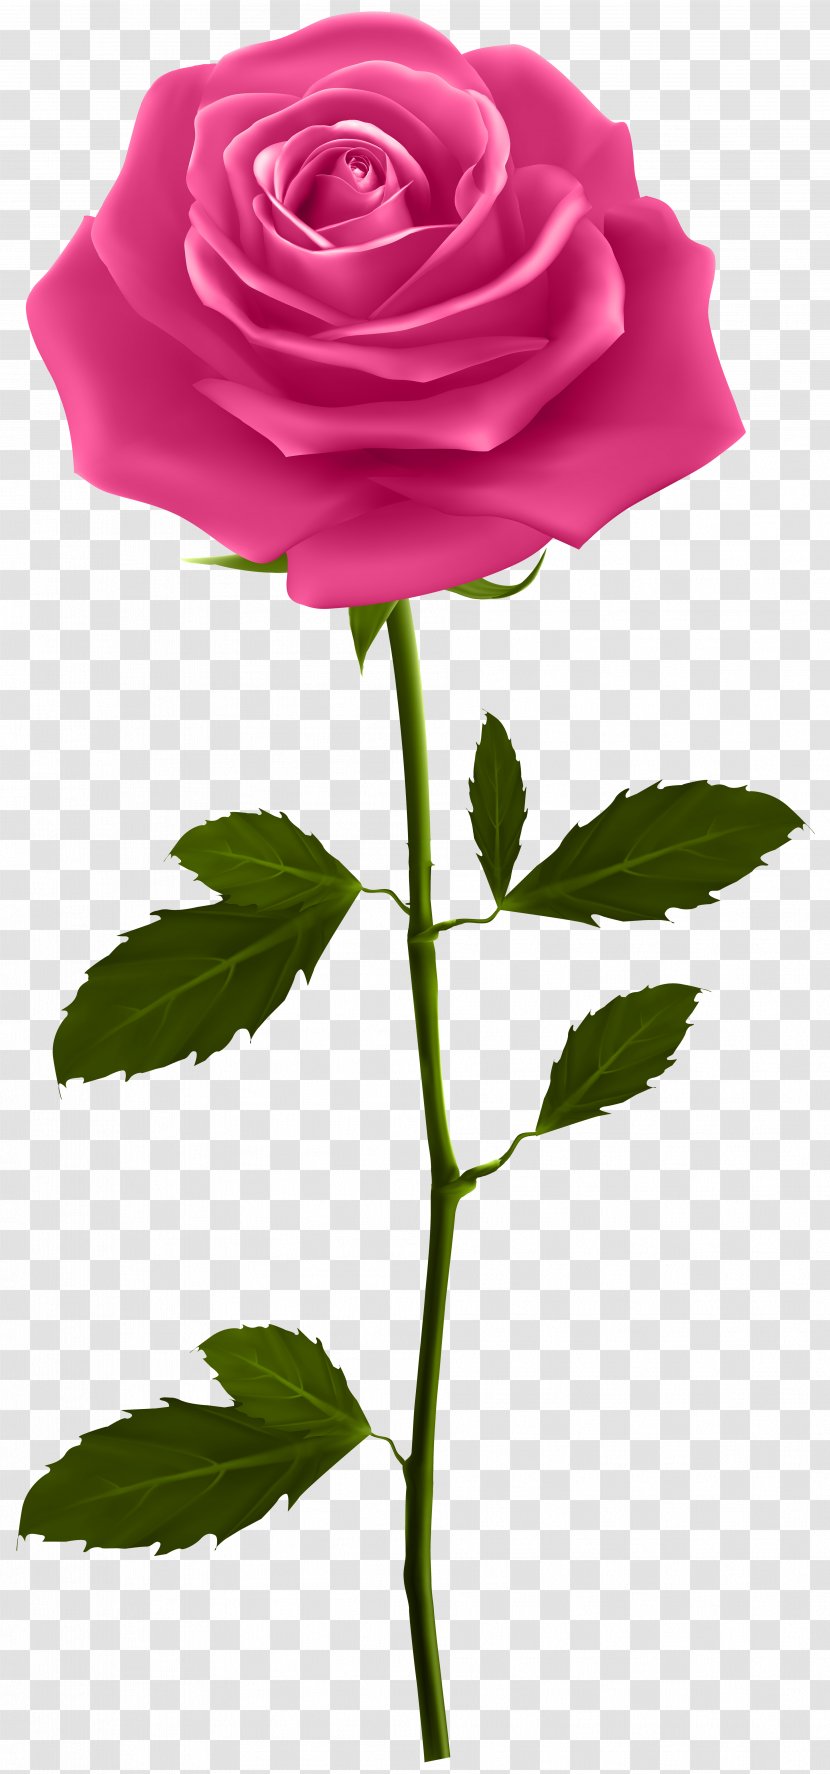 Rose Plant Stem Clip Art - Order - Pink With Image Transparent PNG